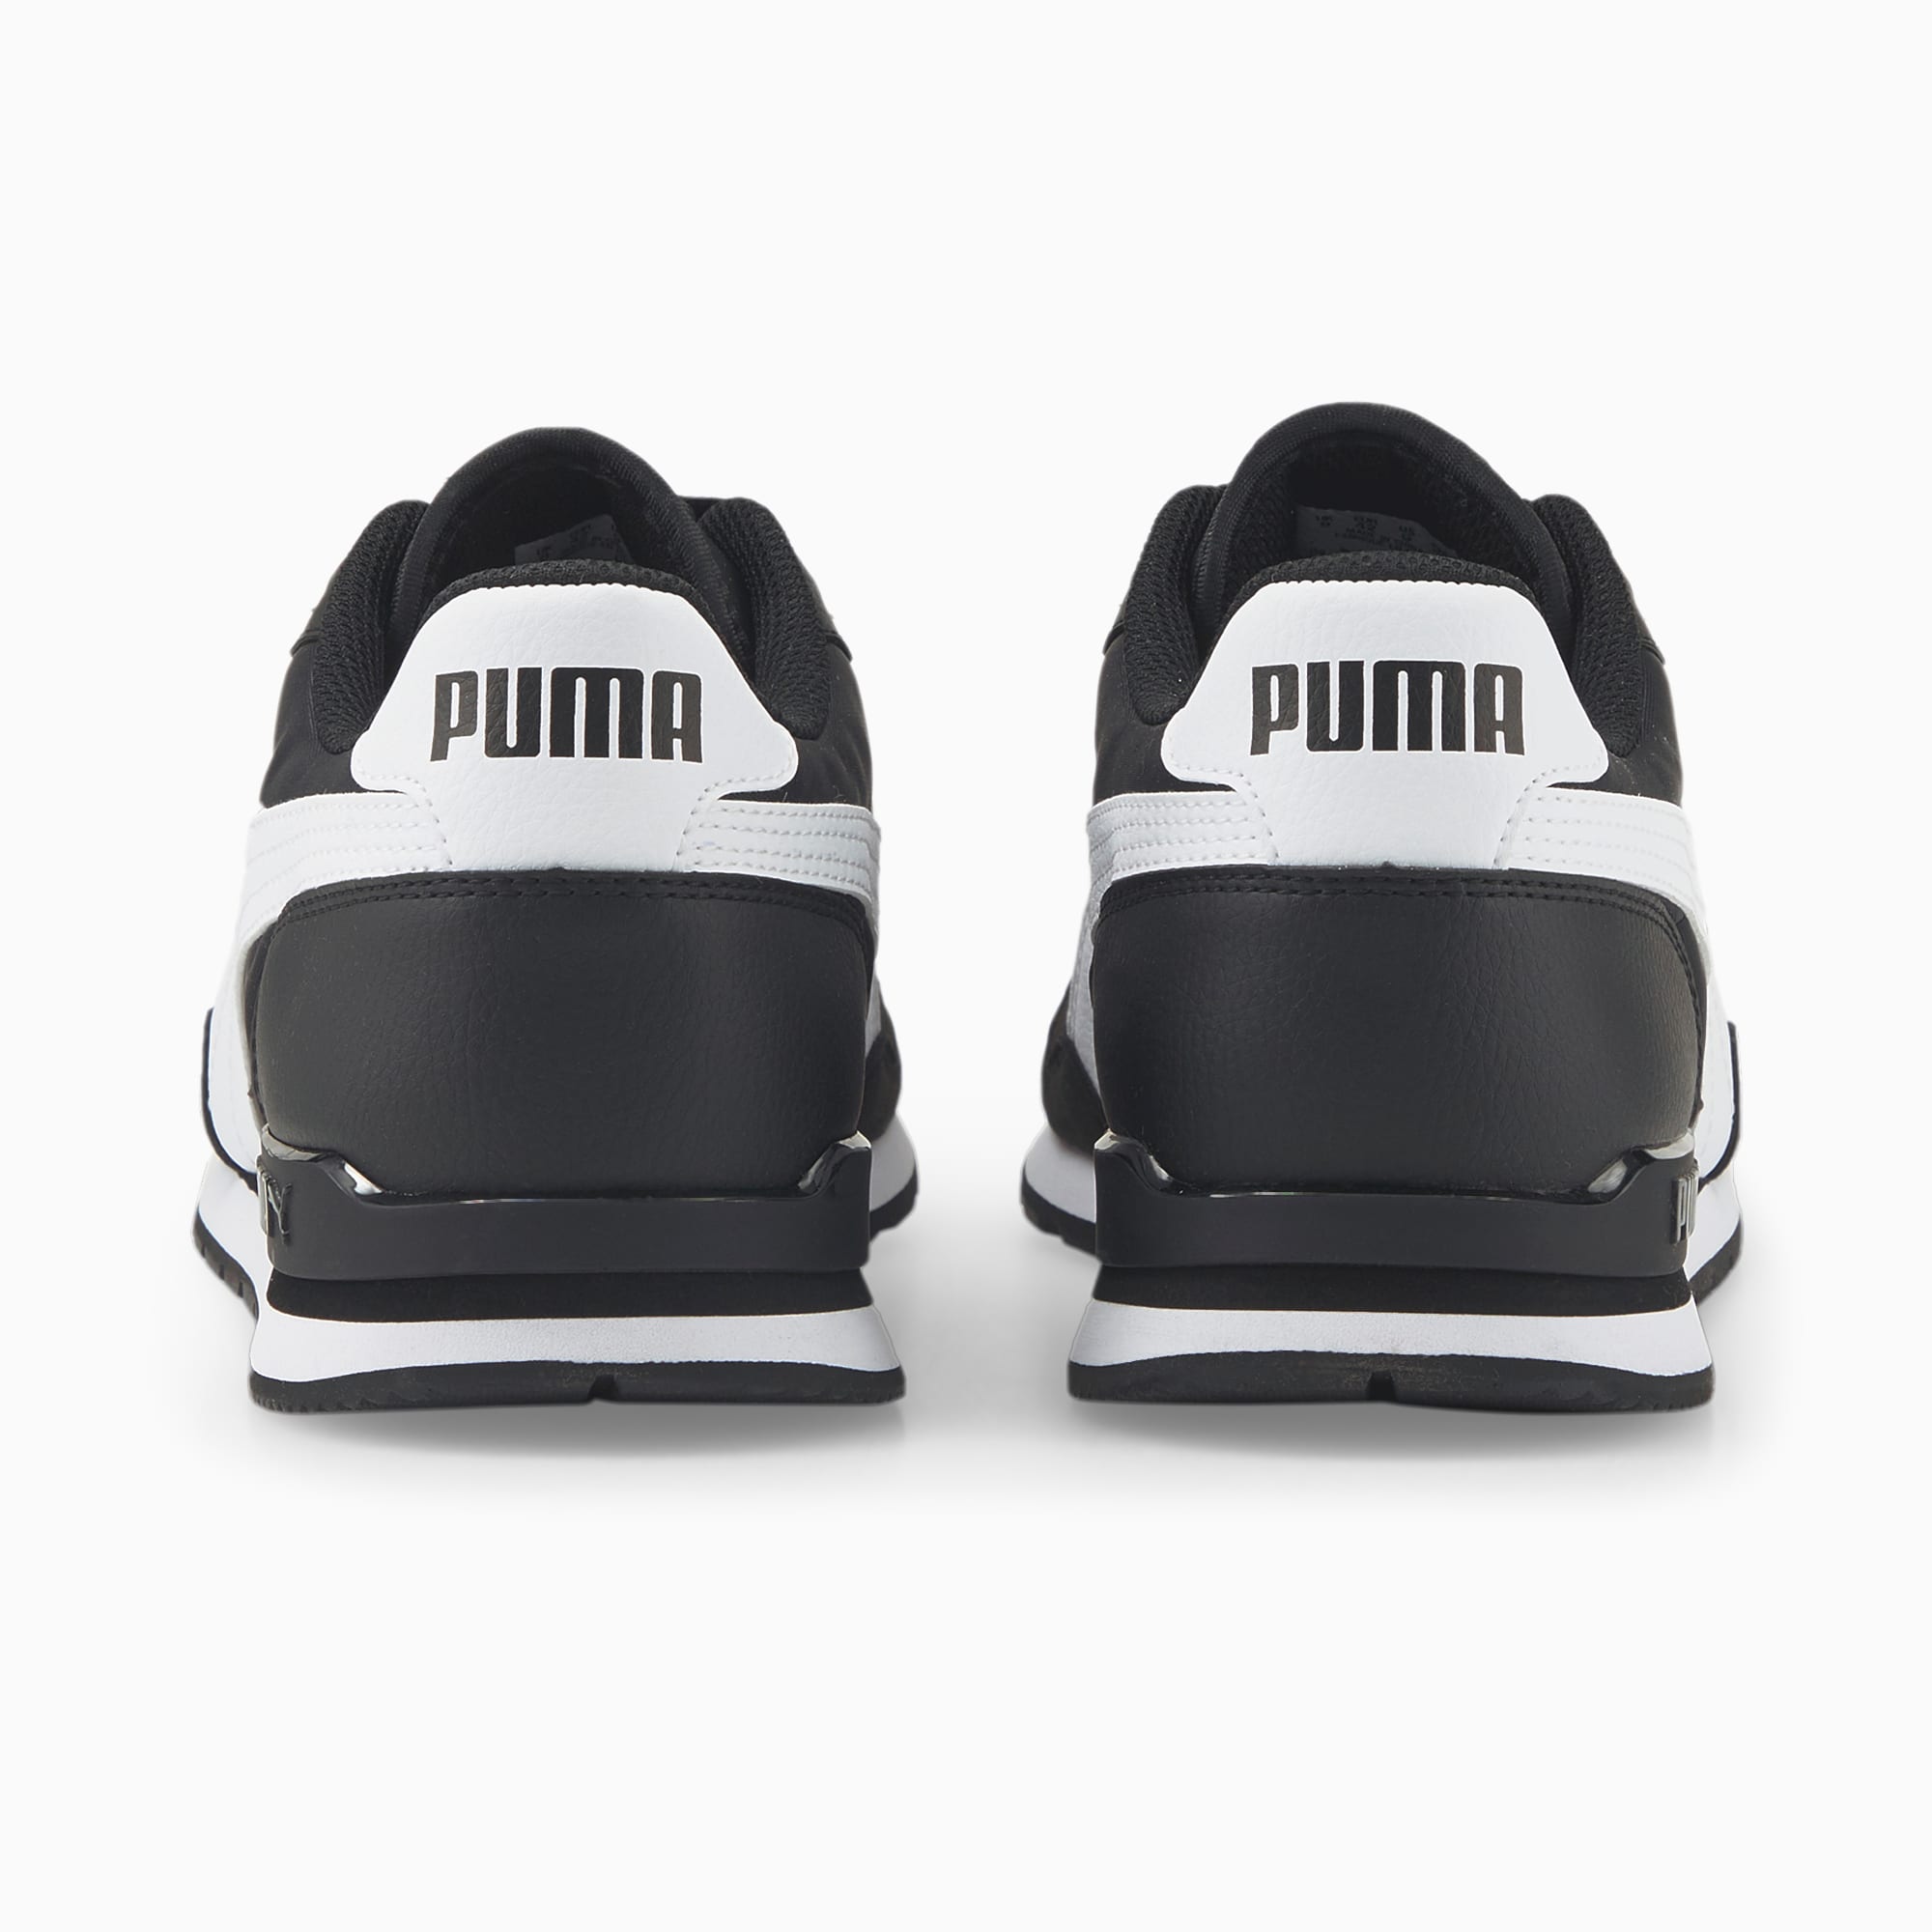 Puma ST RUNNER v3 L 384855 16 Men's Sneakers